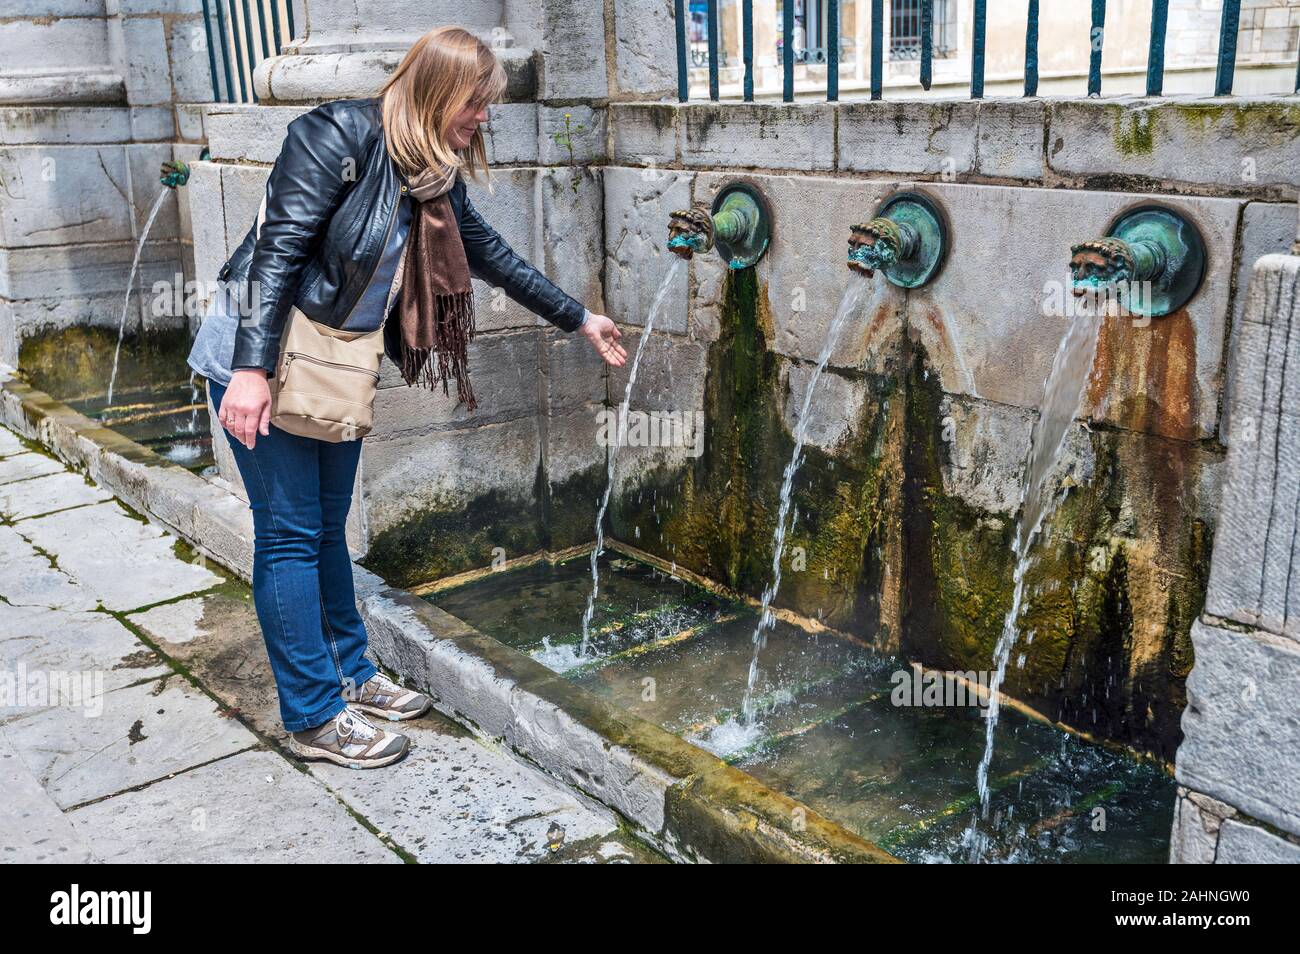 La femme est en contact avec le jet d'eau chaude de la source thermale dans le centre-ville de Dax. La région Aquitaine, Landes, Aquitaine Nouvelle. Banque D'Images